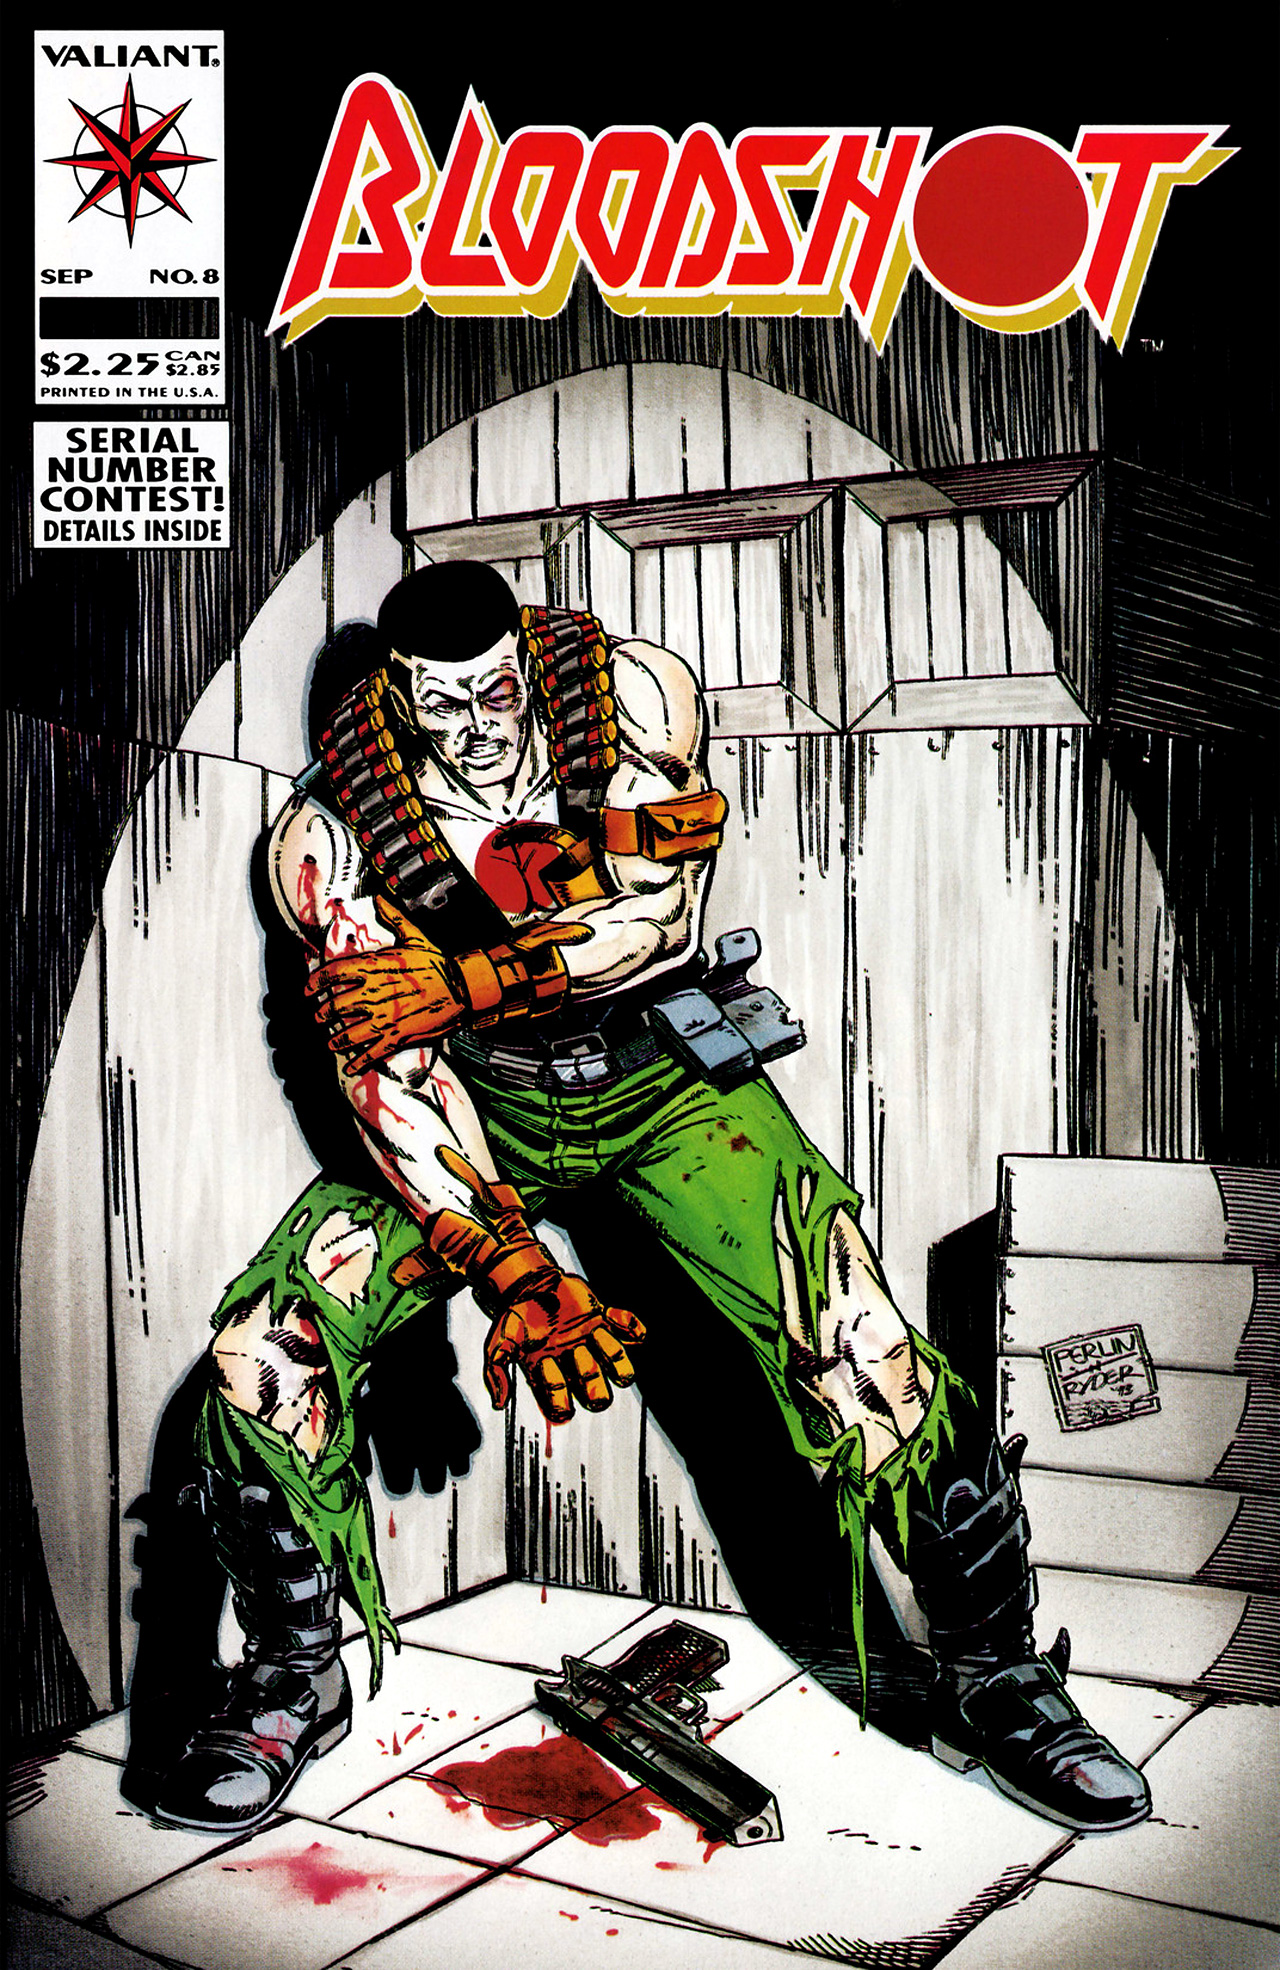 Bloodshot (1993) Issue #8 #10 - English 1